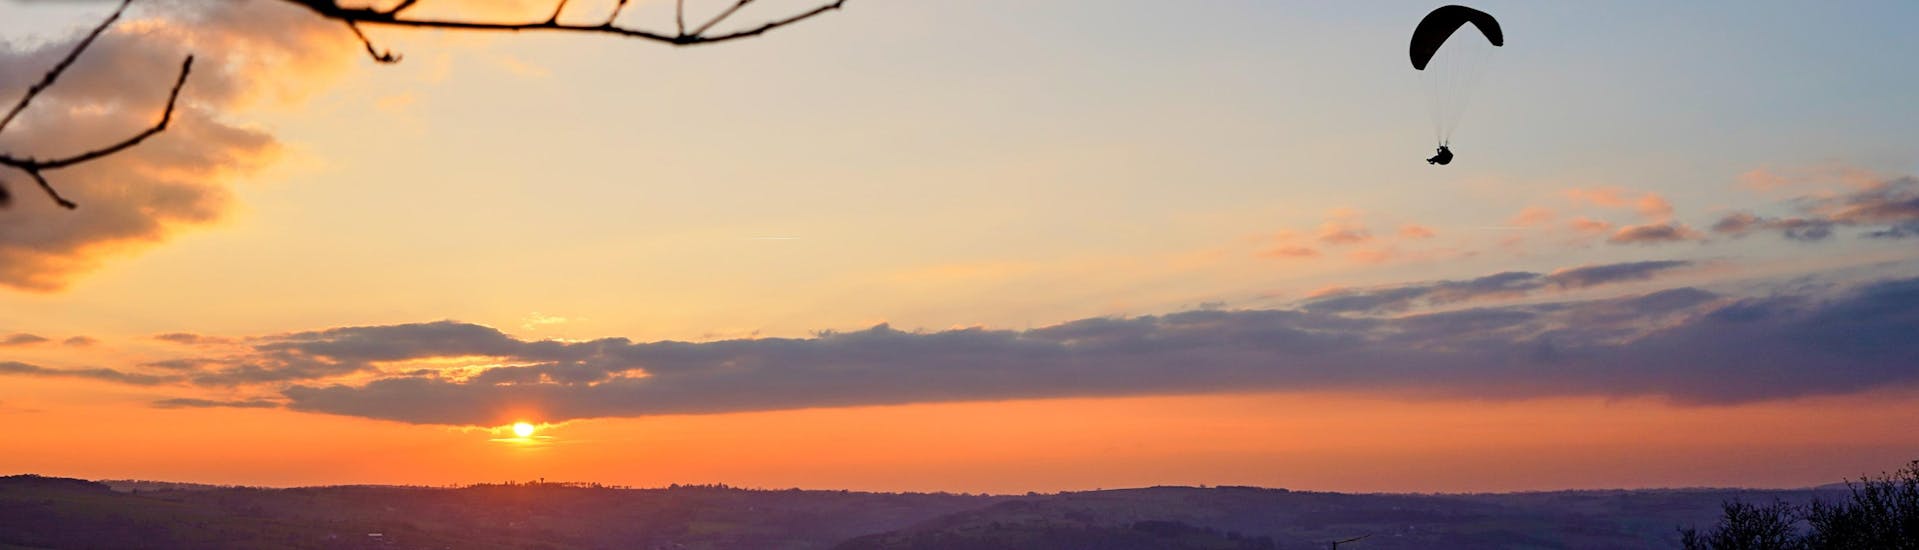 Un pilote de parapente effectue un vol en parapente au coucher du soleil au-dessus des paysages de Normandie à Clécy.